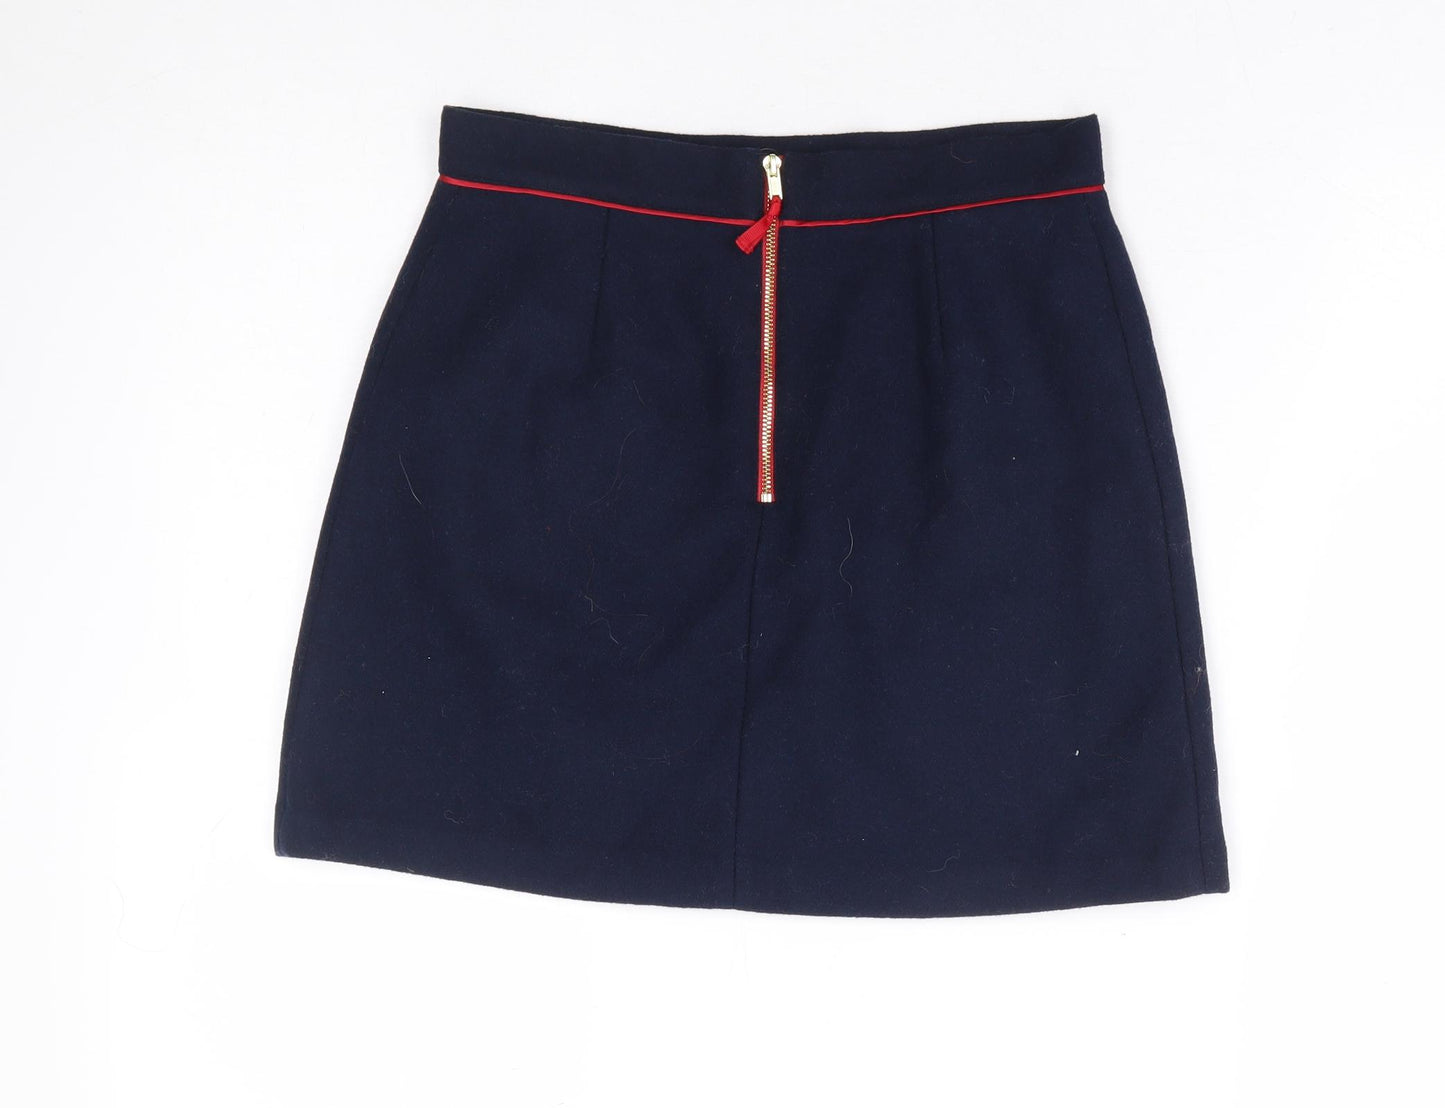 Autograph Girls Blue Polyester A-Line Skirt Size 11-12 Years Regular Zip